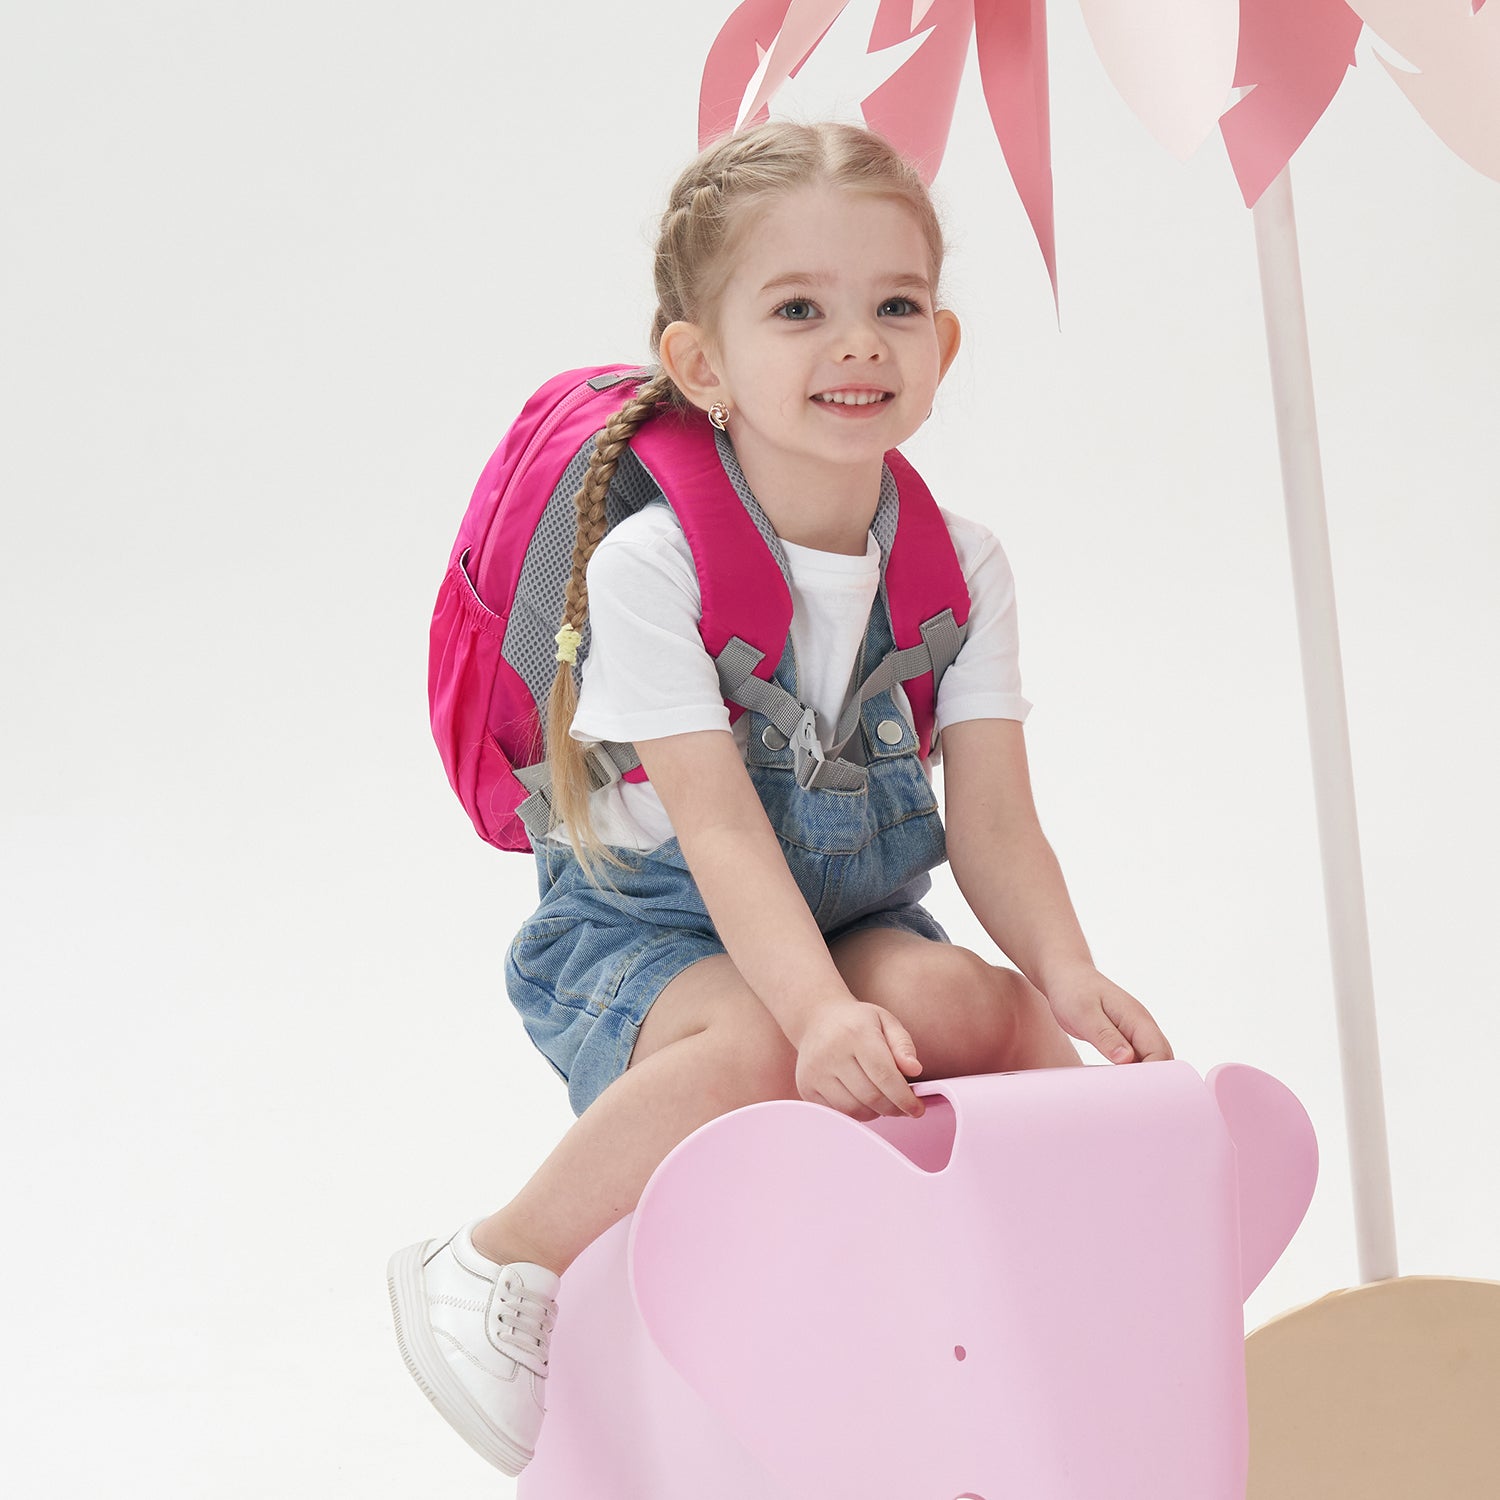 Kids Toddler Backpack for Boys Girls Preschool Kindergarten Bag